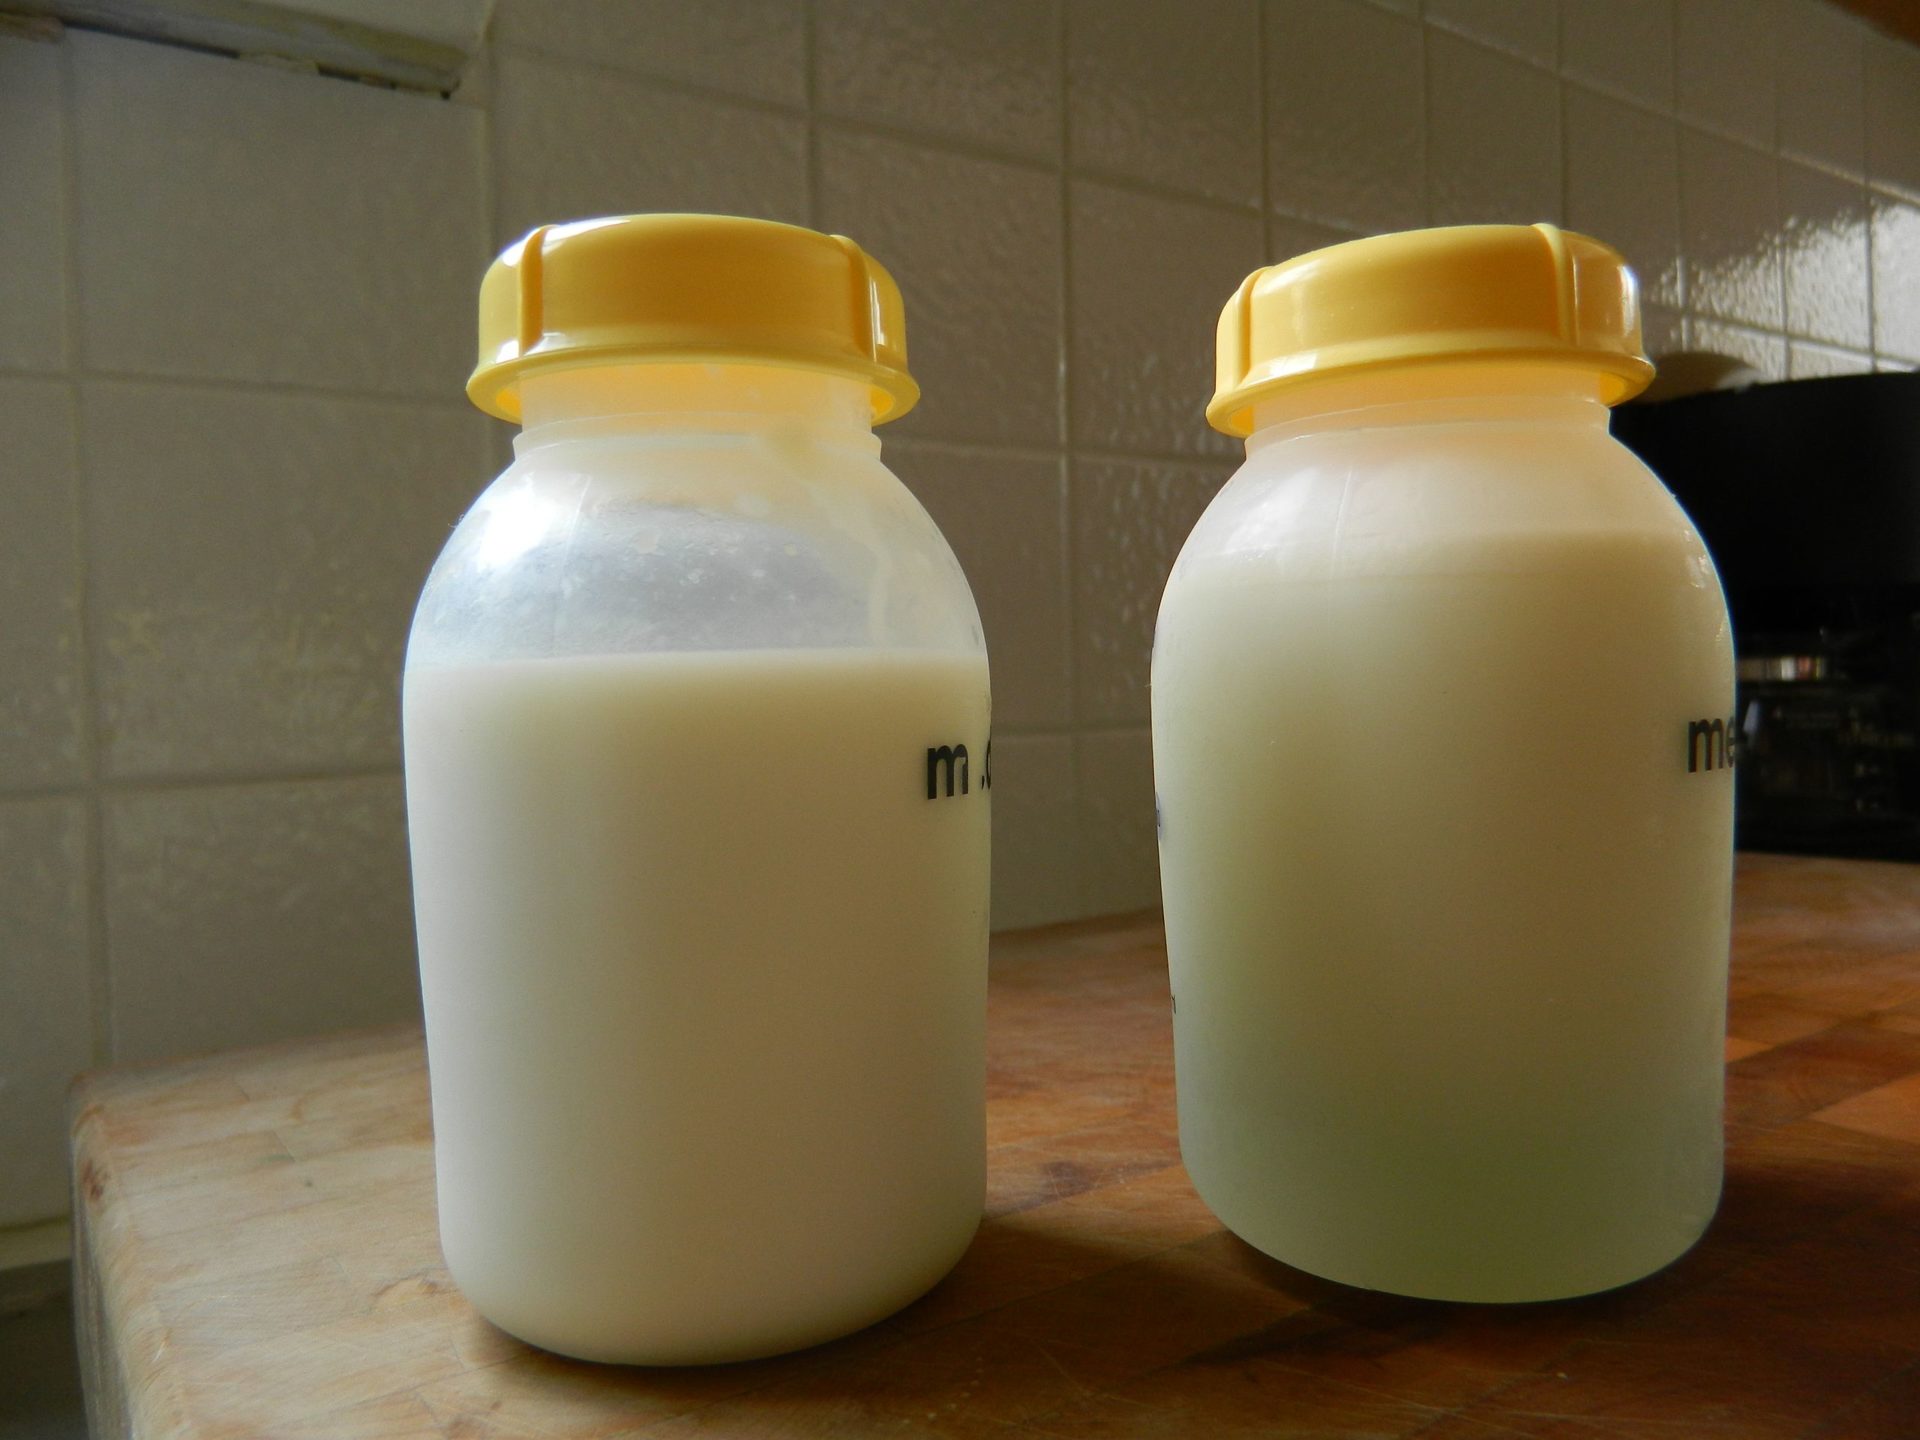 สีของน้ำนมแม่เปรียบเทียบกับนมผง (ภาพจาก: <a href="https://en.wikipedia.org/wiki/File:Formula_and_breastmilk.jpg" target="_blank">Wikipedia</a>)